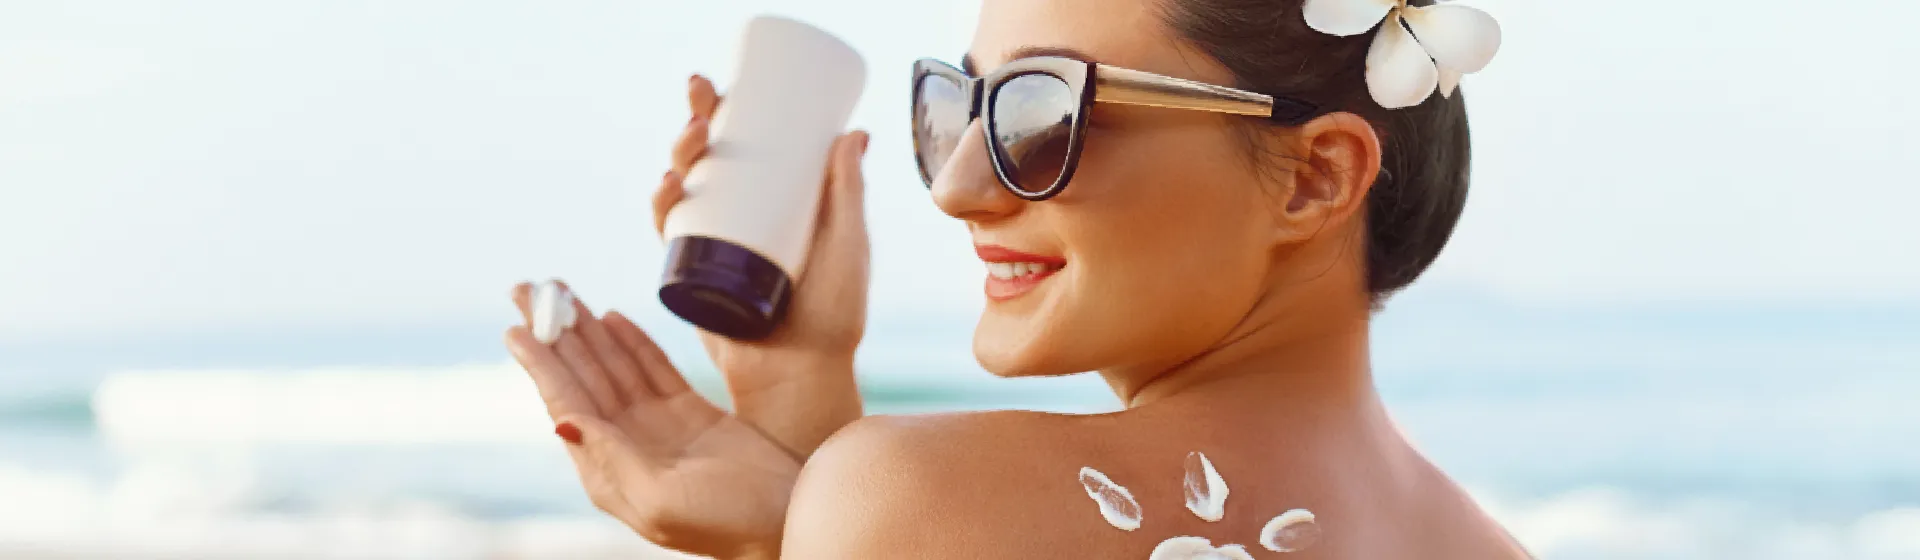 Melhor protetor solar de 2021: 10 opções para todos os tipos de pele